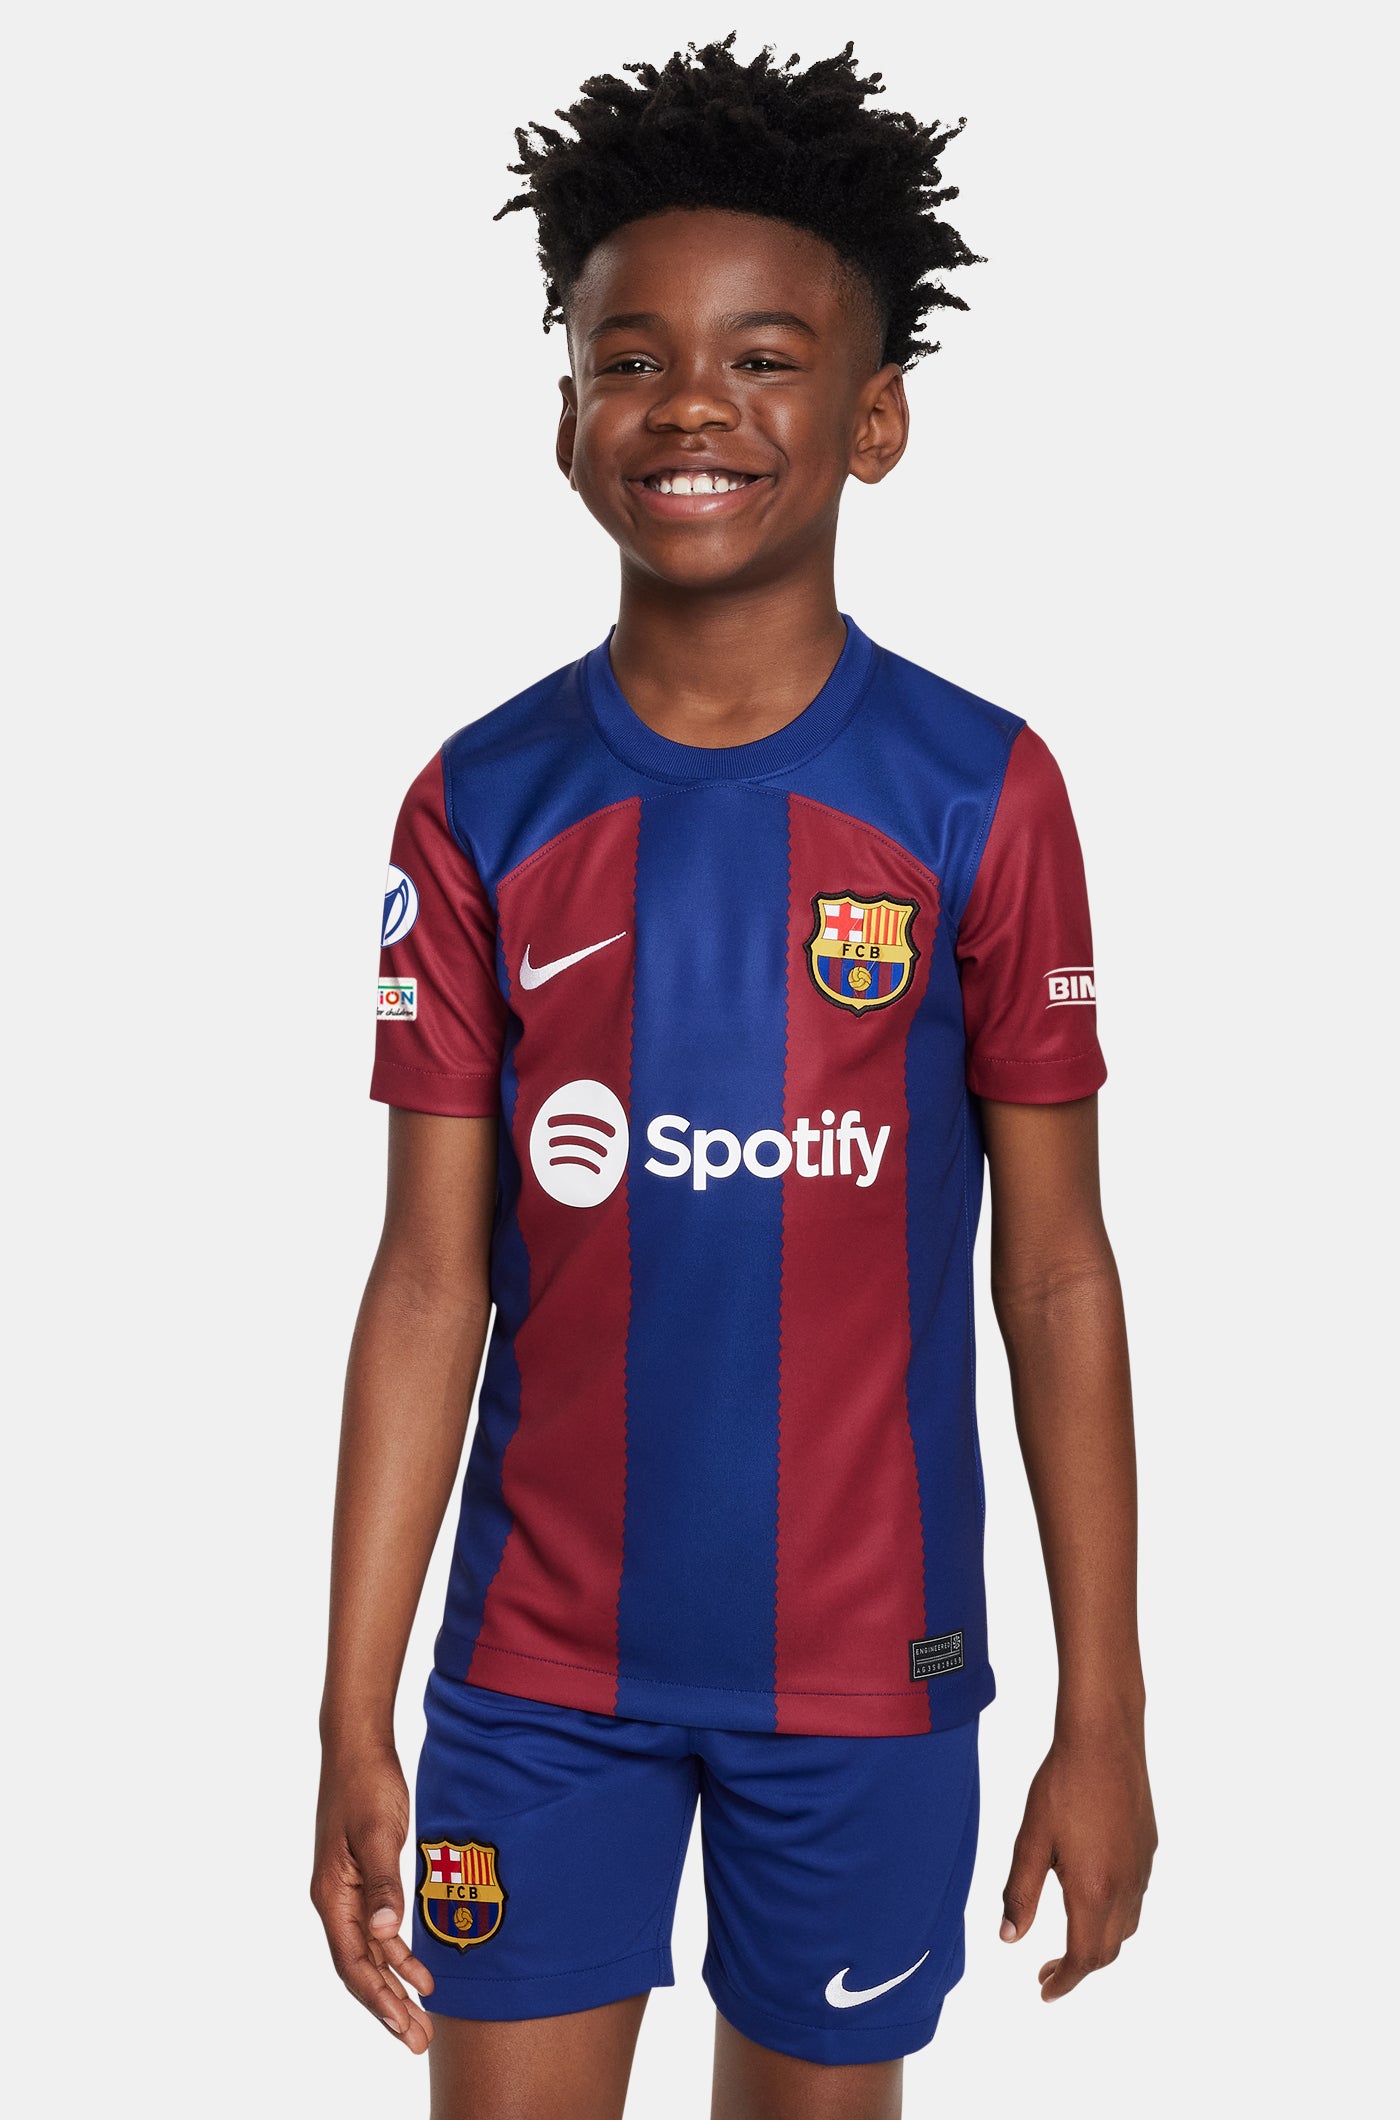 UWCL FC Barcelona home shirt 23/24 - Junior - ENGEN